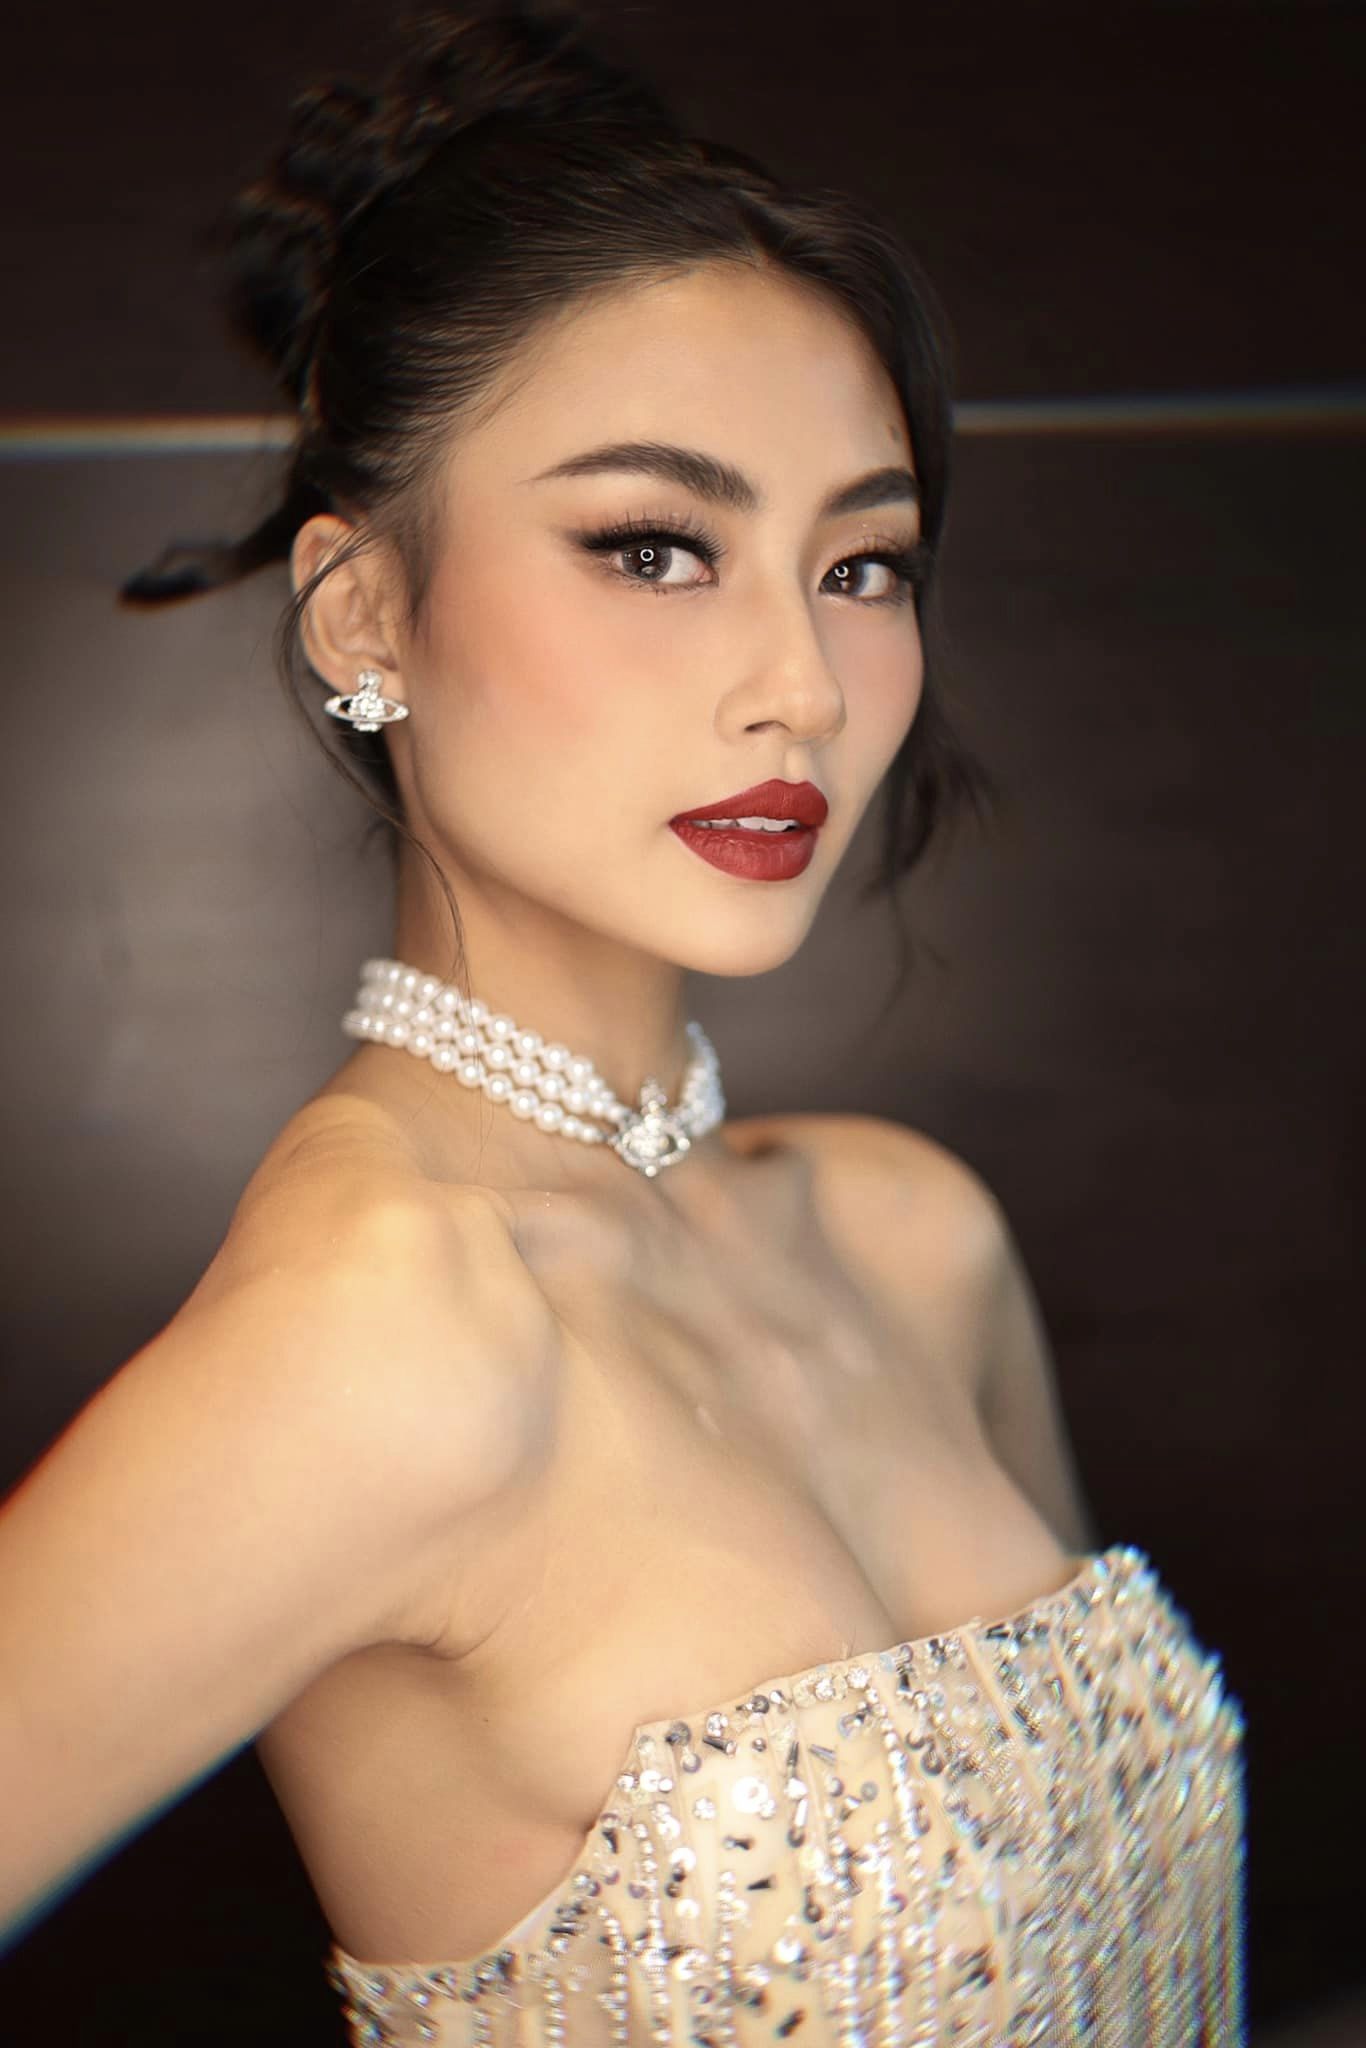 Tân Hoa hậu Hoàn vũ Việt Nam sinh năm 2001: Cựu học sinh trường chuyên, Á quân một cuộc thi nổi tiếng và là trò cưng của Vũ Thu Phương - Ảnh 4.